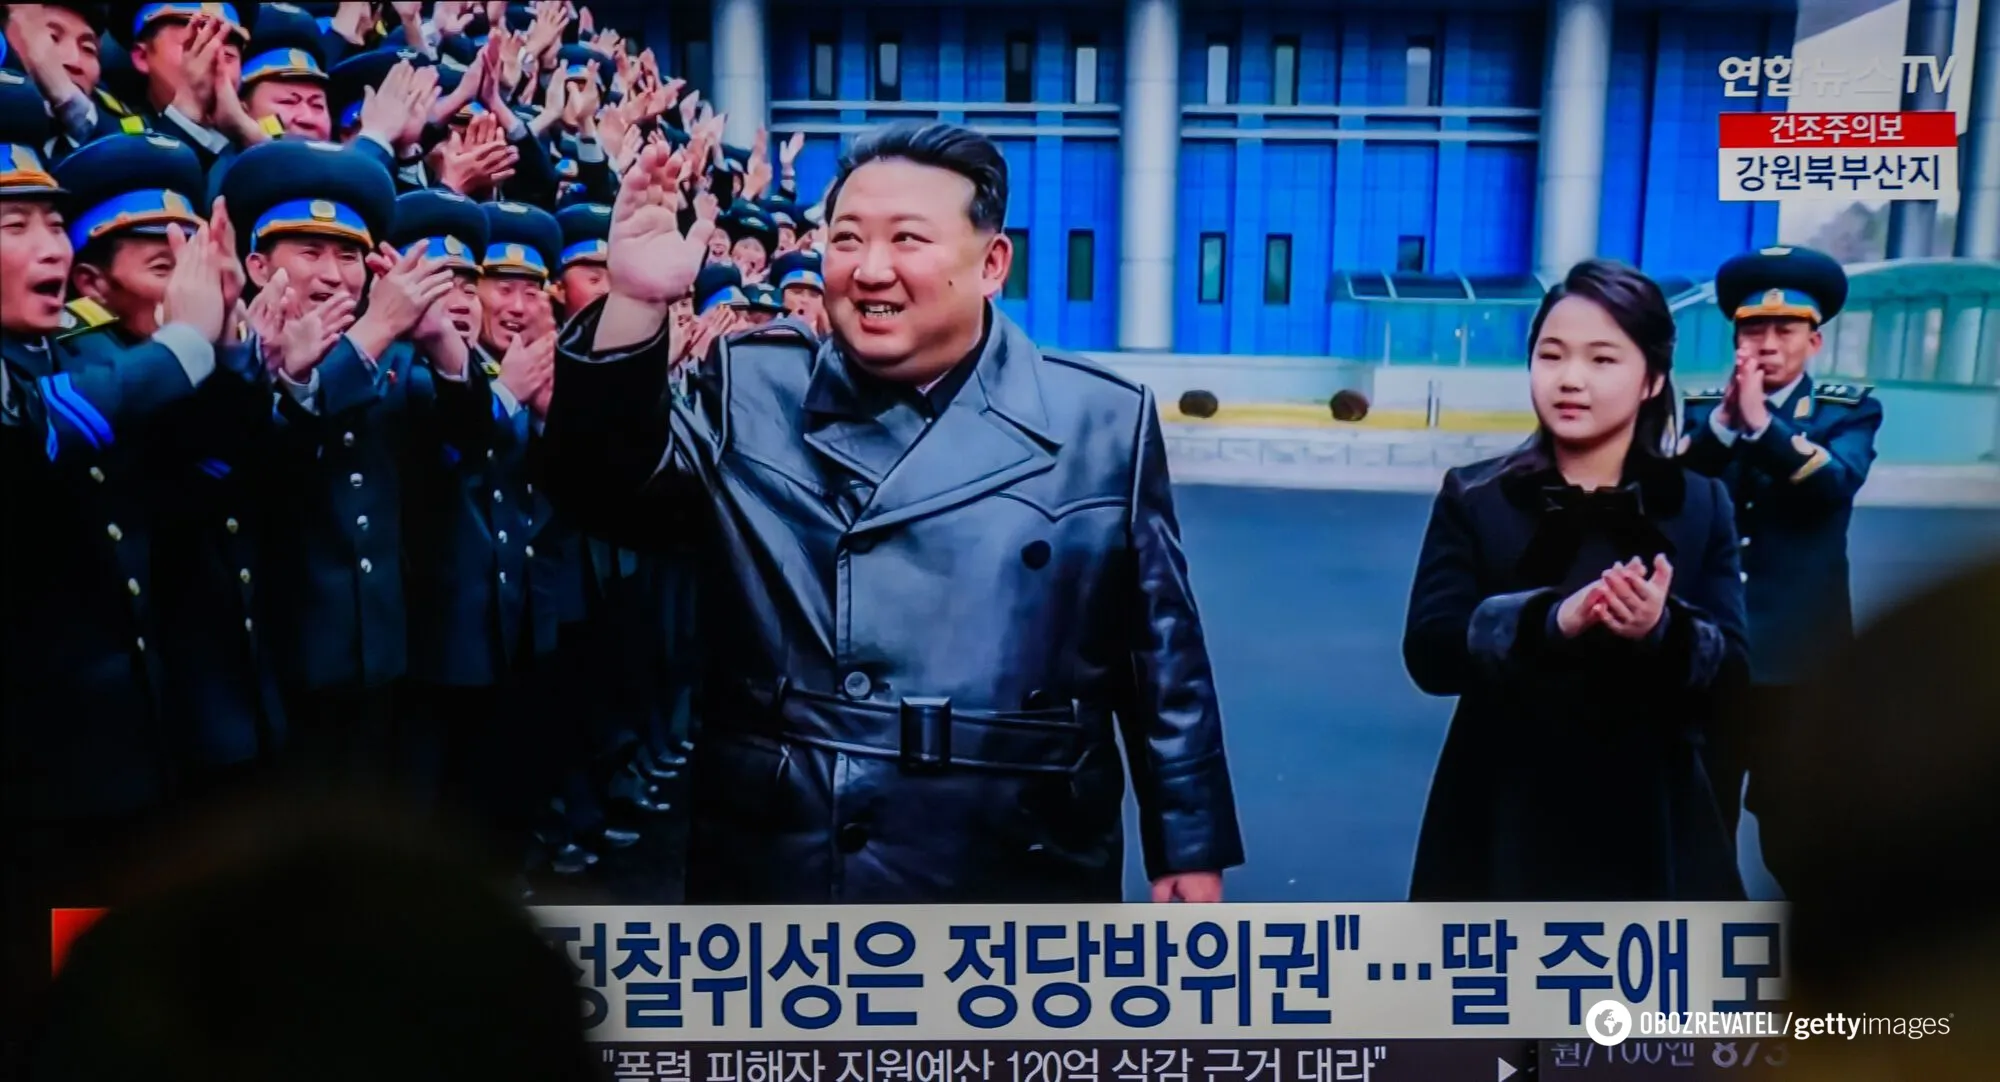 10-летняя дочь Ким Чен Ына снова вышла с папой на публику: лидер КНДР в кожаном плаще держал ее за руку